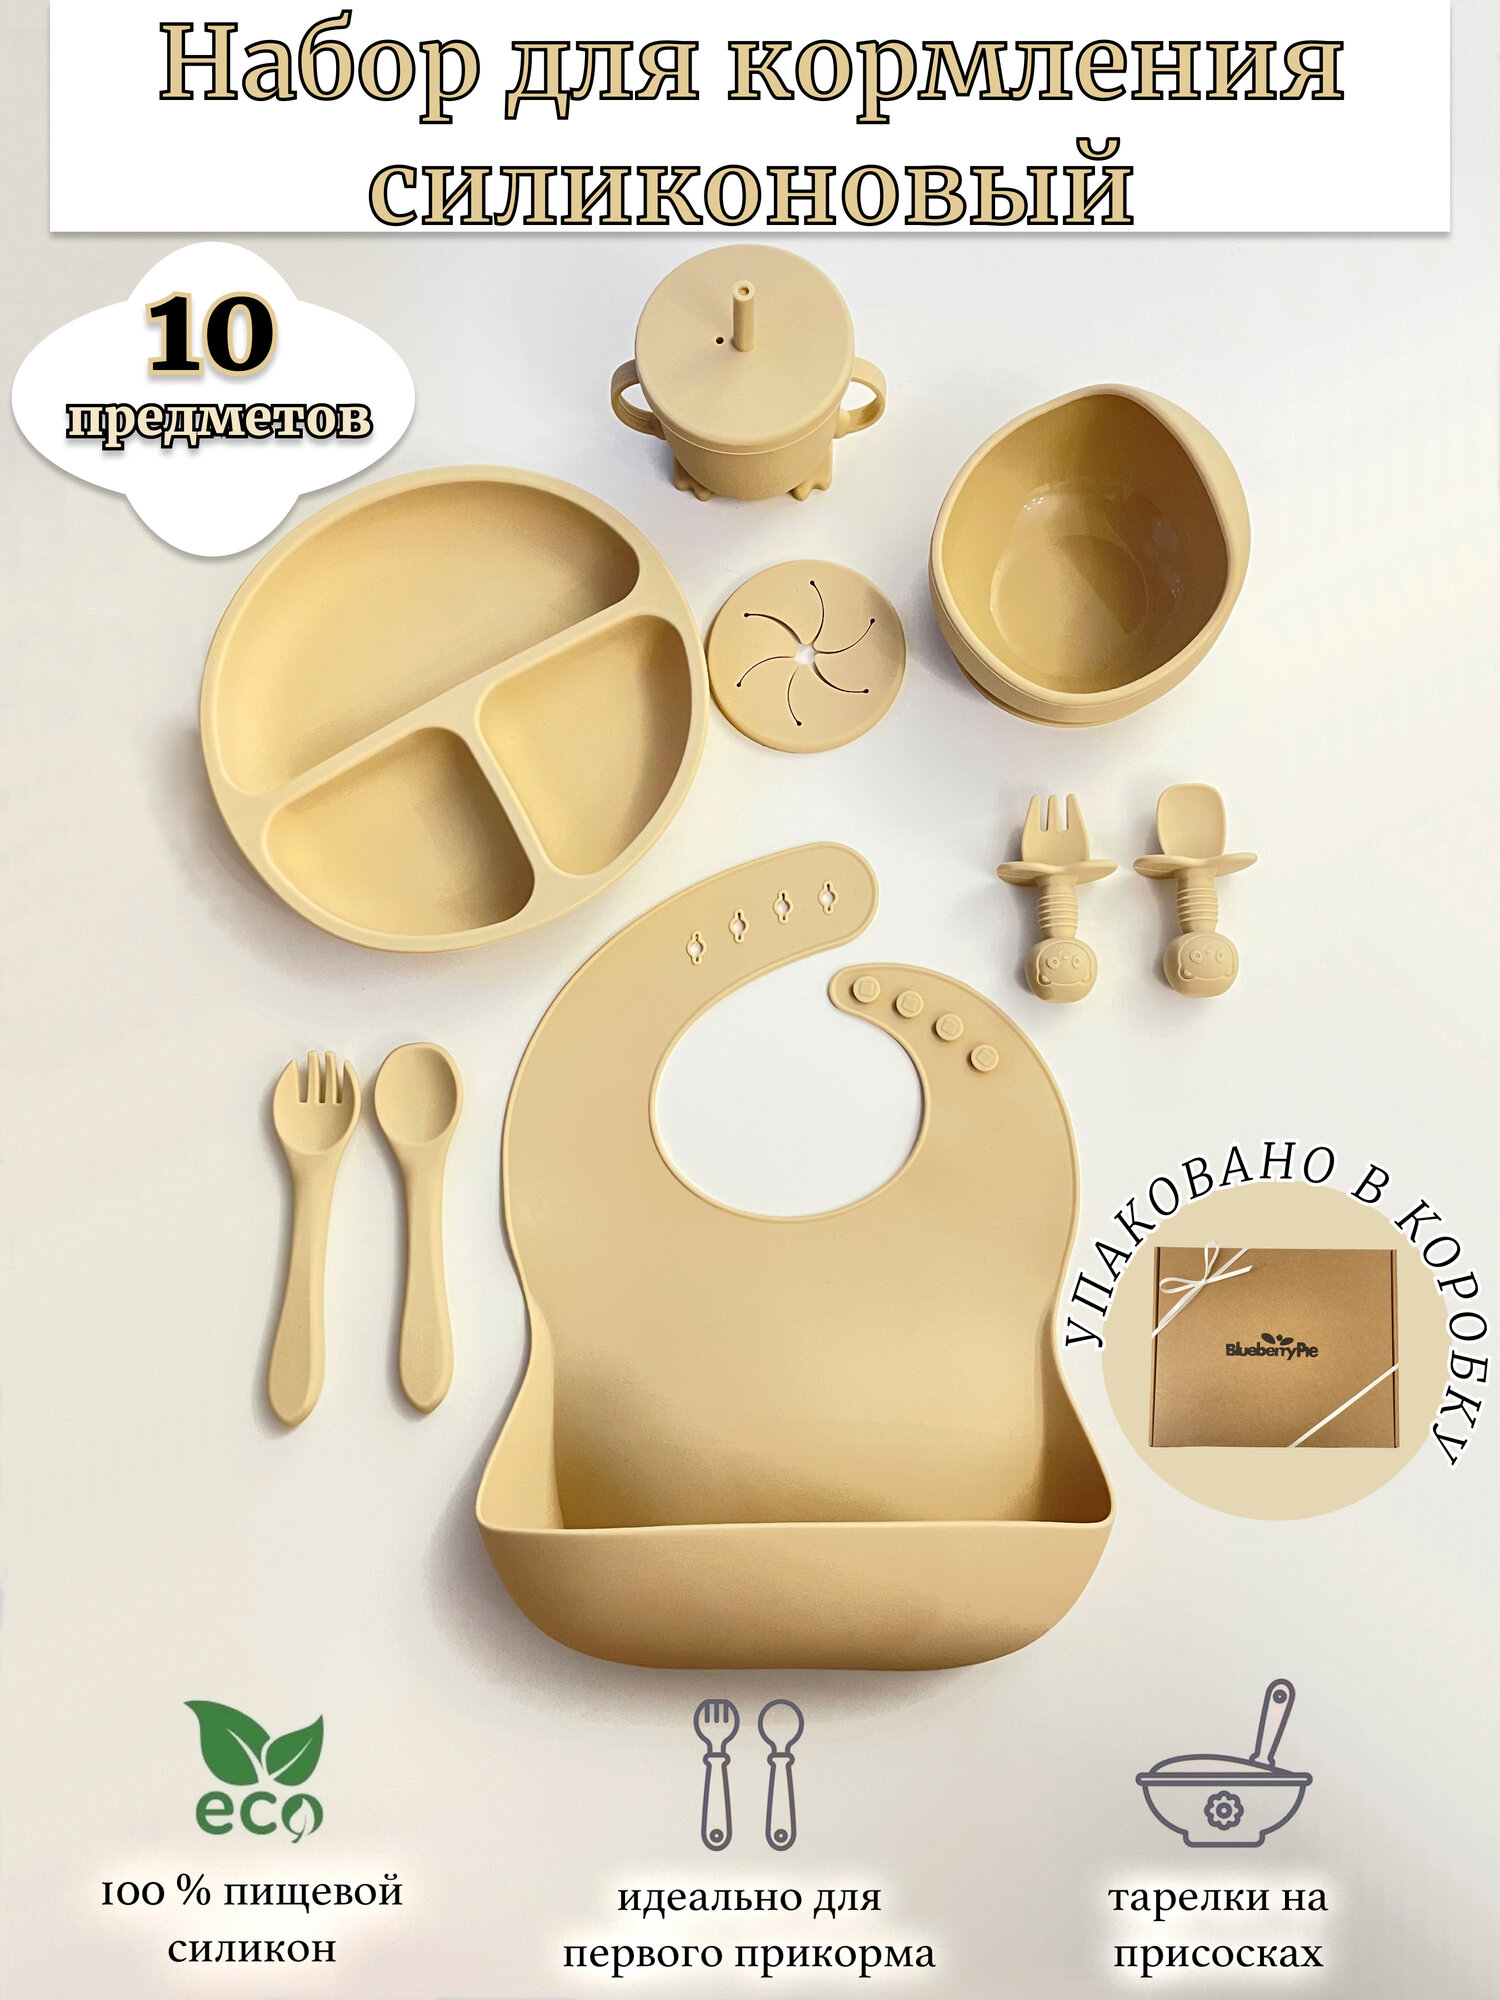 Набор силиконовой детской посуды для кормления 10 предметов бежевый: слюнявчик, тарелка на присоске, ложка, поильник